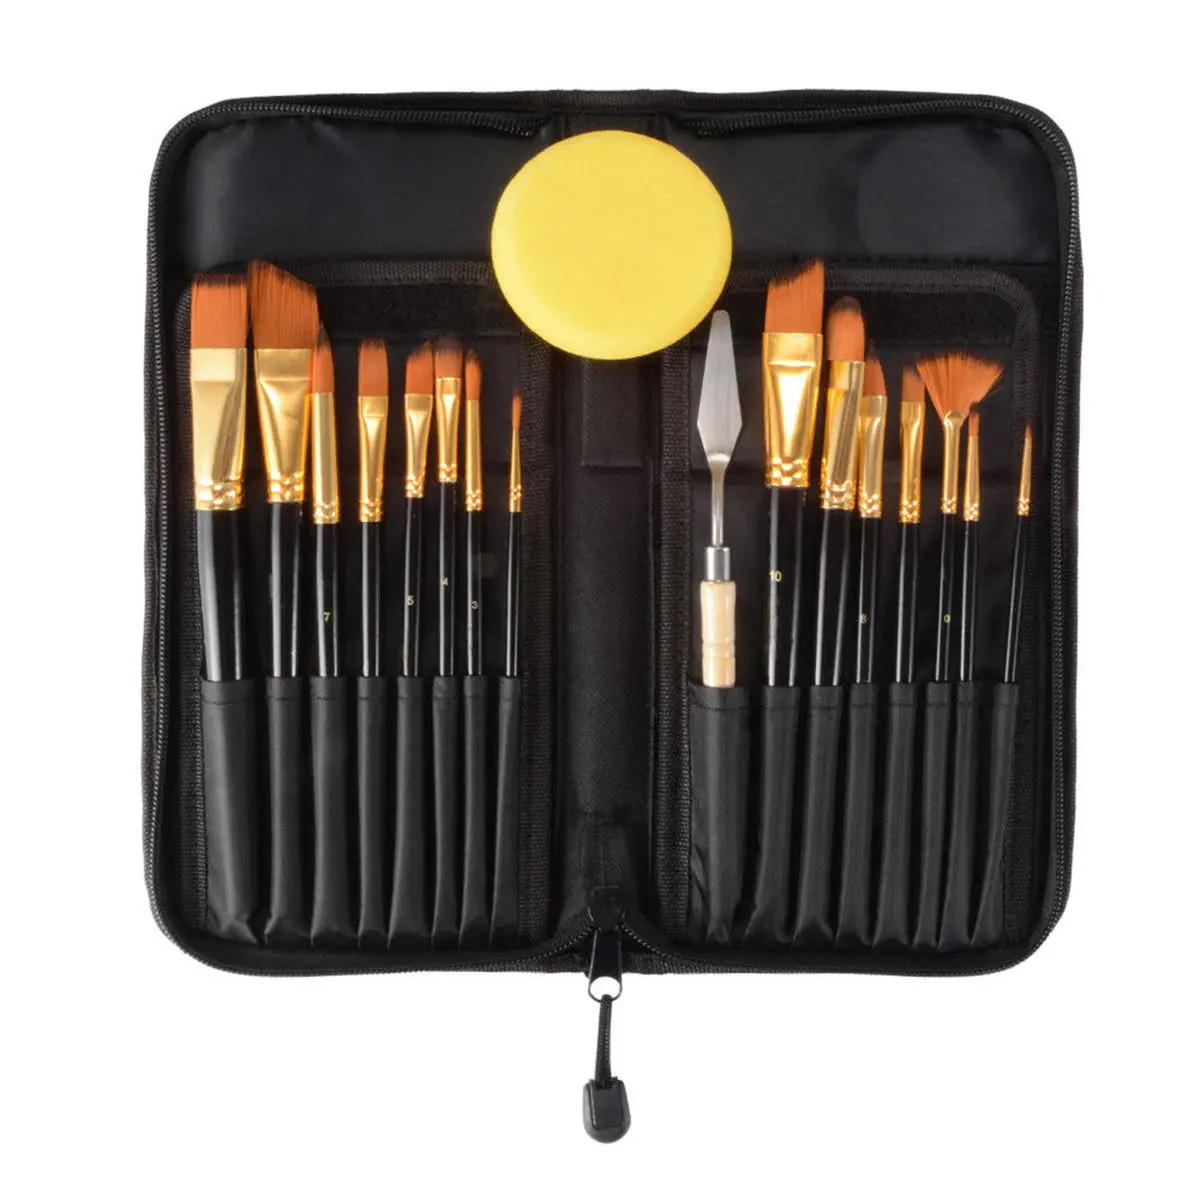 15pcs nylon hair artist paint brushes palette sponge set with storage case watercolor paint acrylic oil painting art supplies